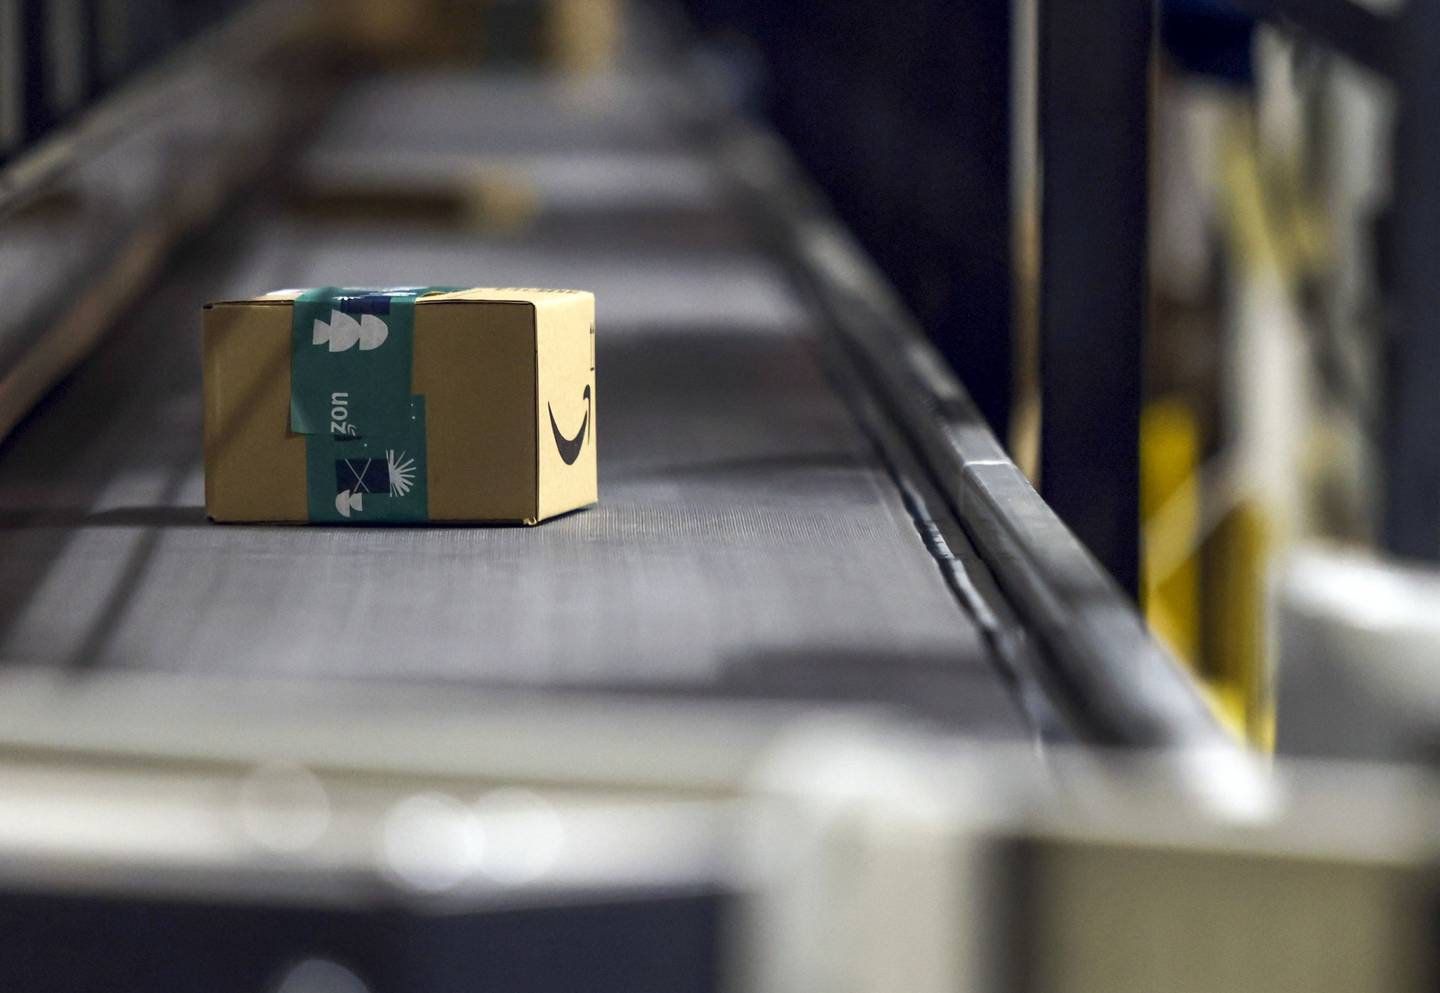 Los descuentos en los productos de marca propia de Amazon pueden llegar a superar hasta el 60%.dfd